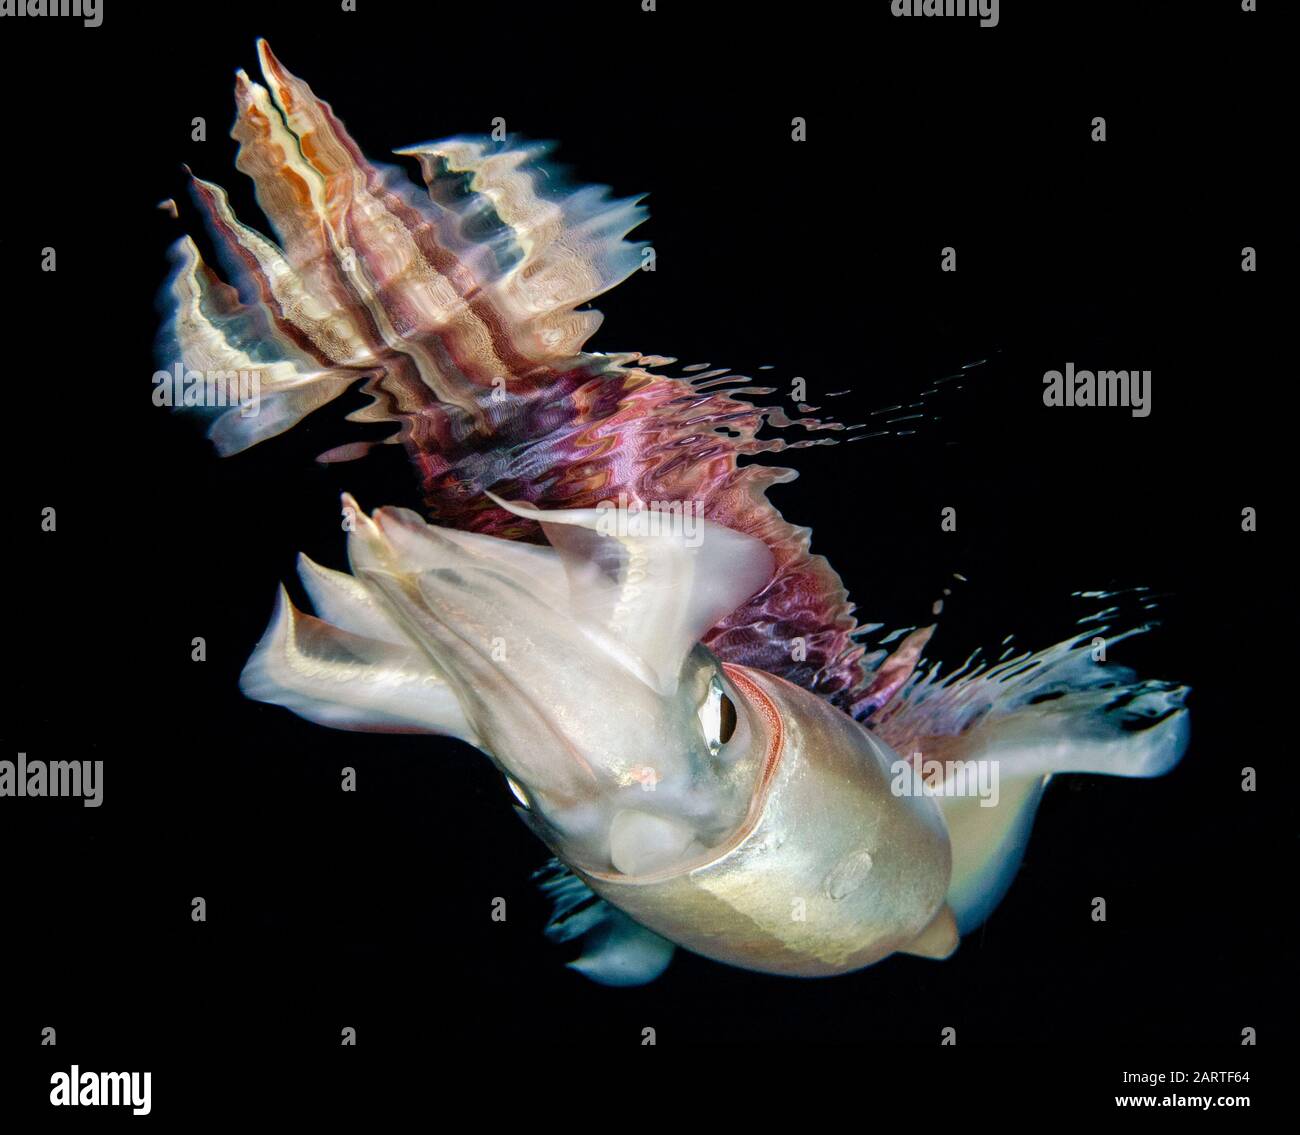 Calamaro volante immagini e fotografie stock ad alta risoluzione - Alamy